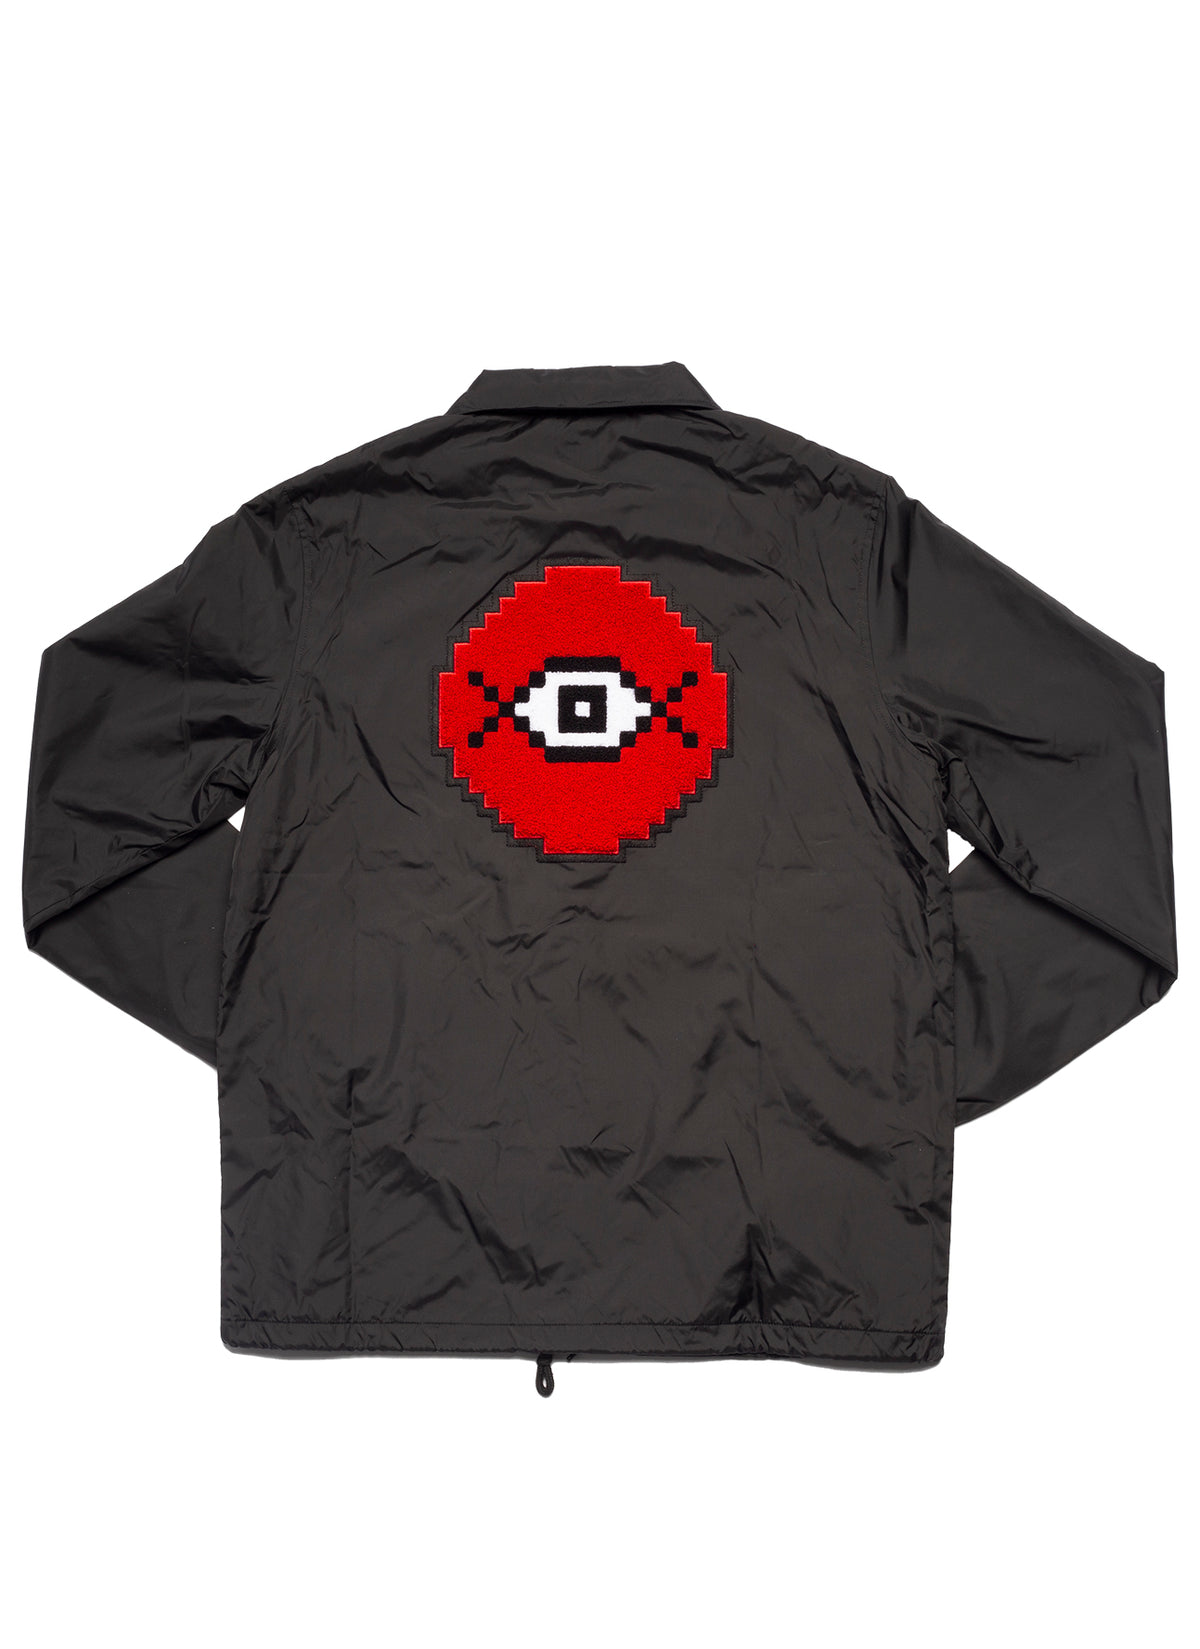 Secrets Pixel Eye Jacket by Chris Dock